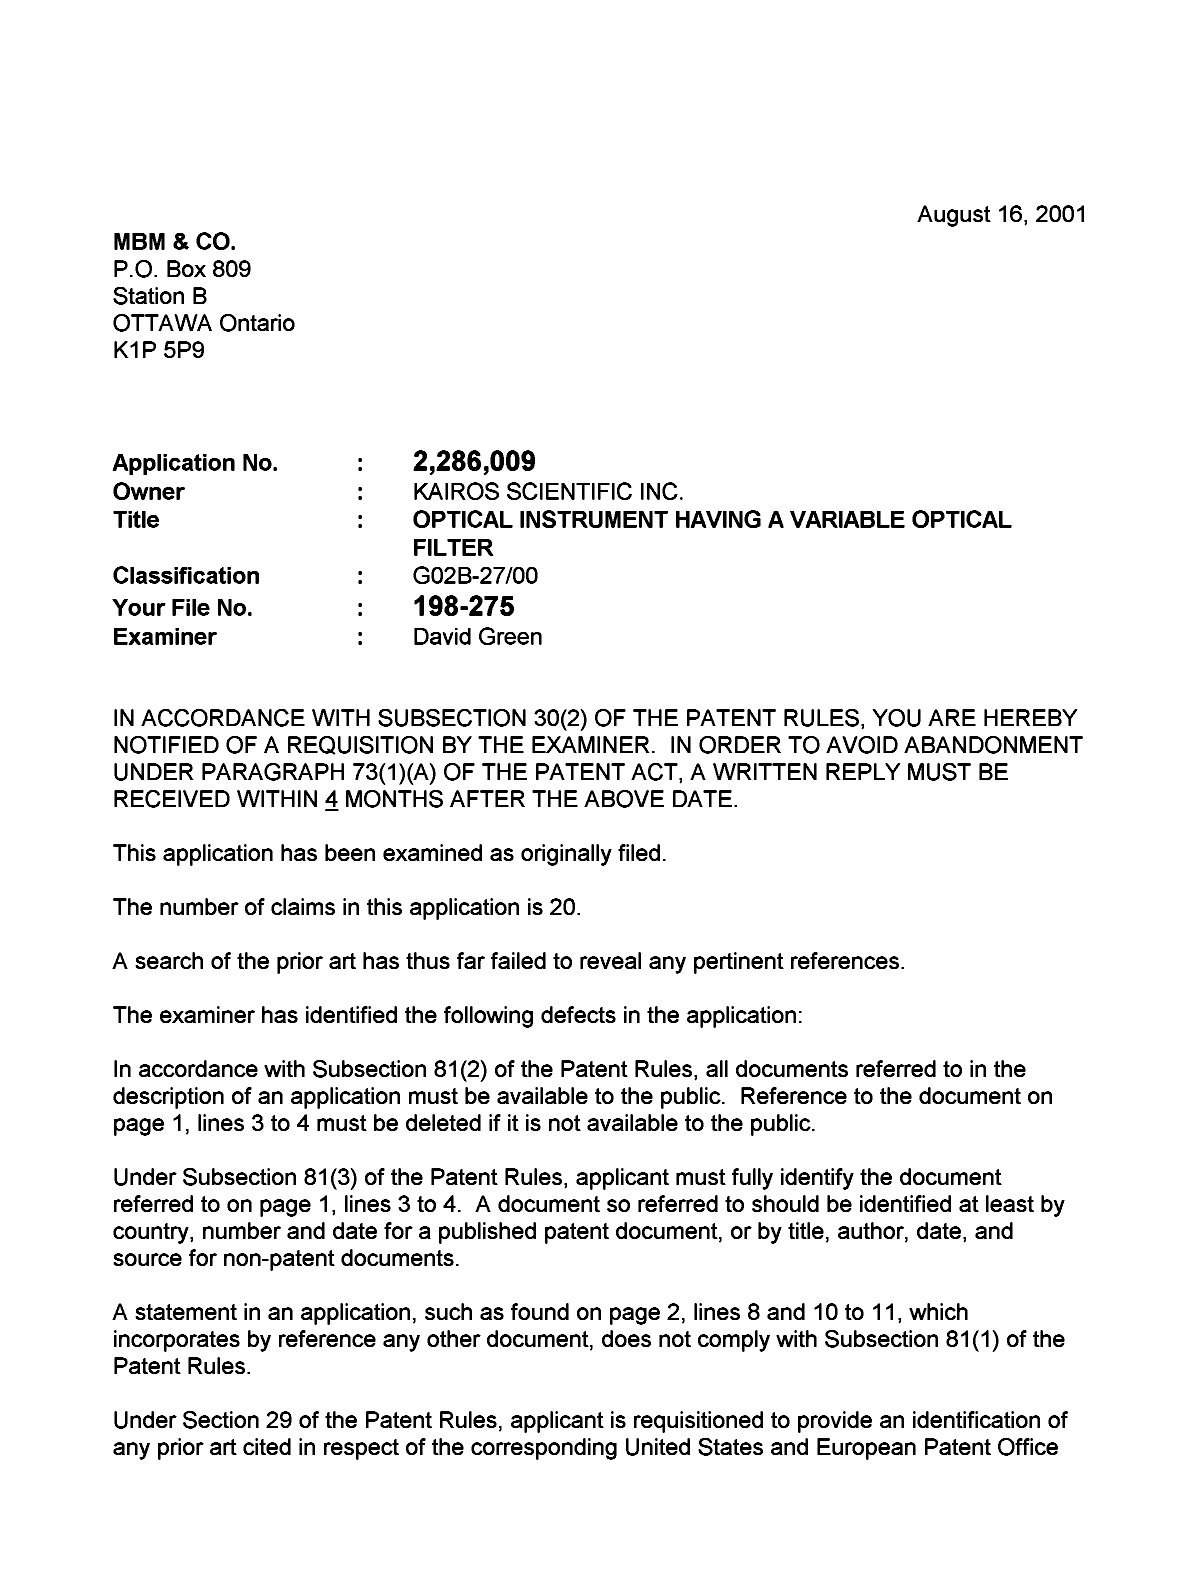 Document de brevet canadien 2286009. Poursuite-Amendment 20010816. Image 1 de 2